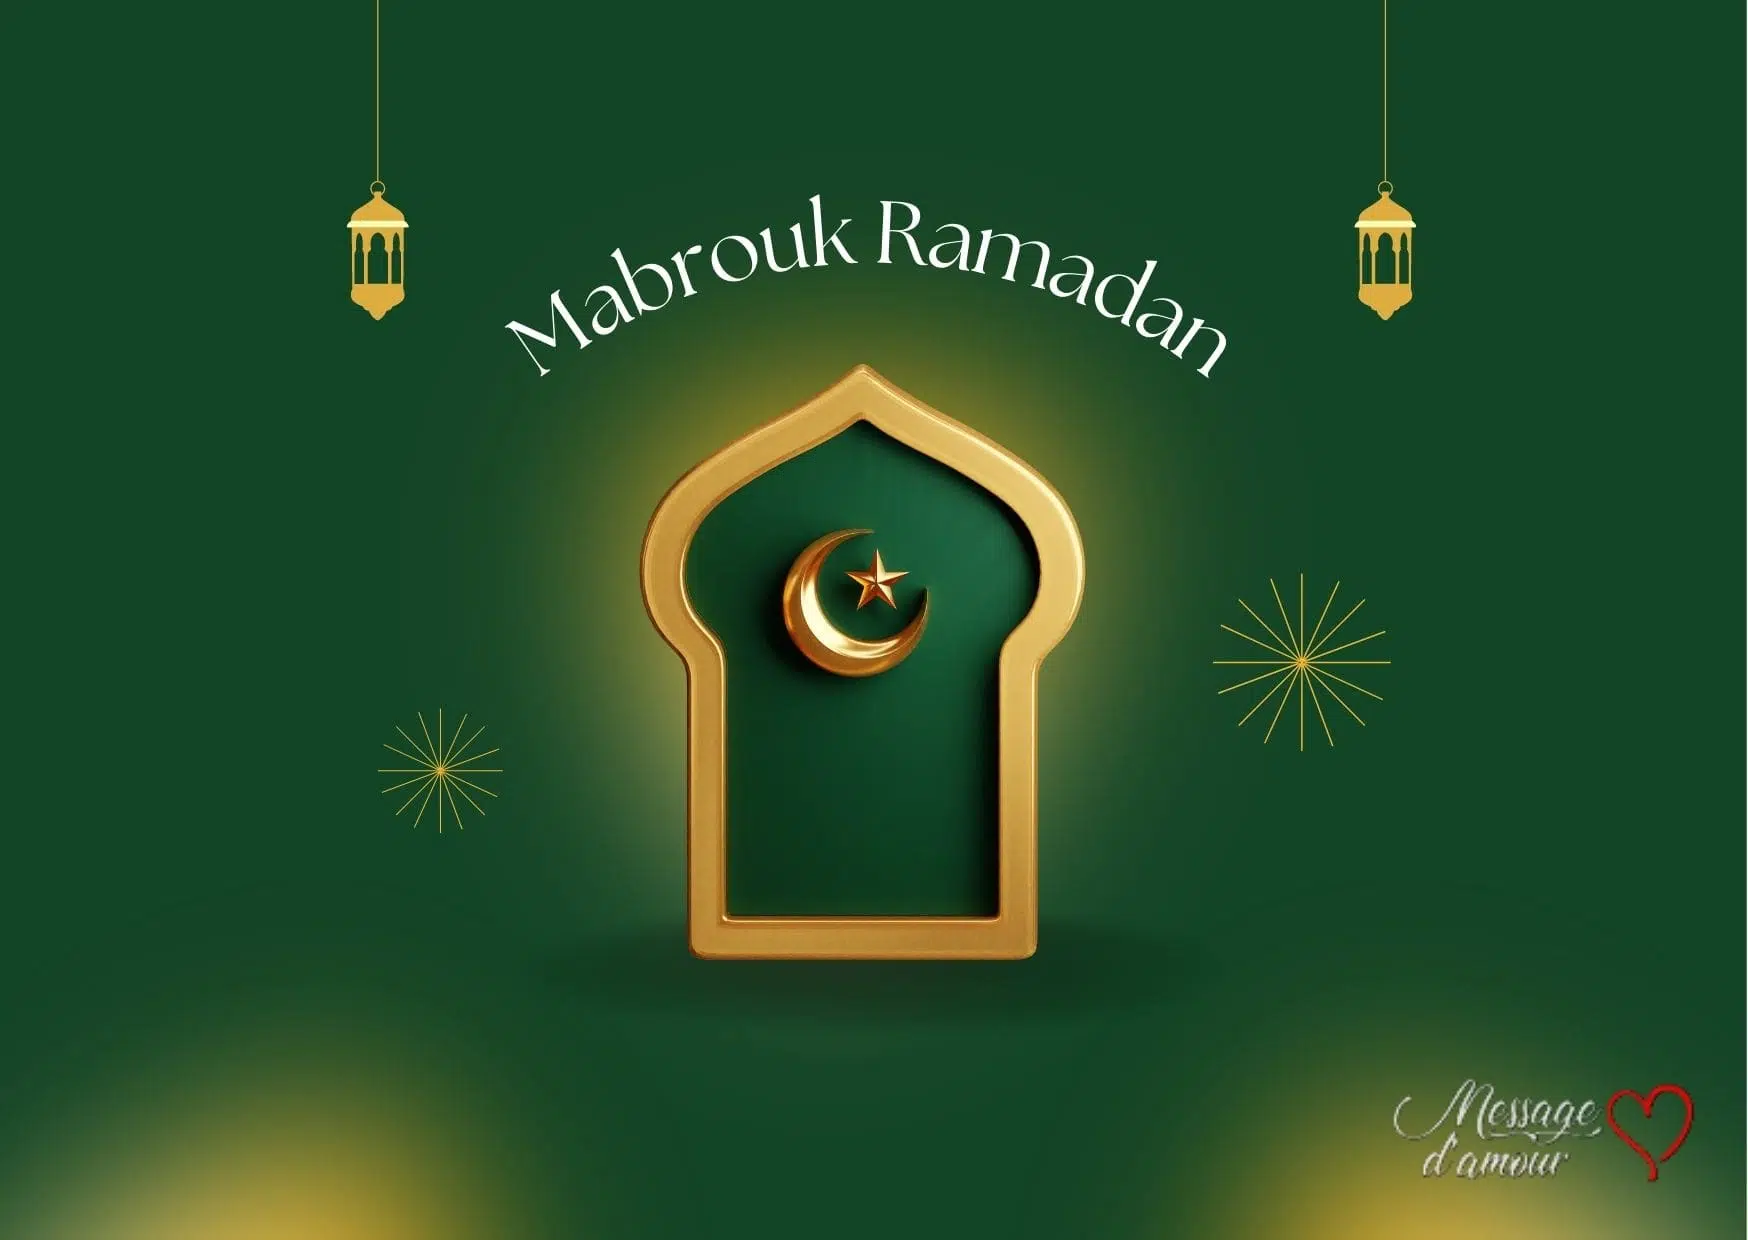 Mabrouk Ramadan